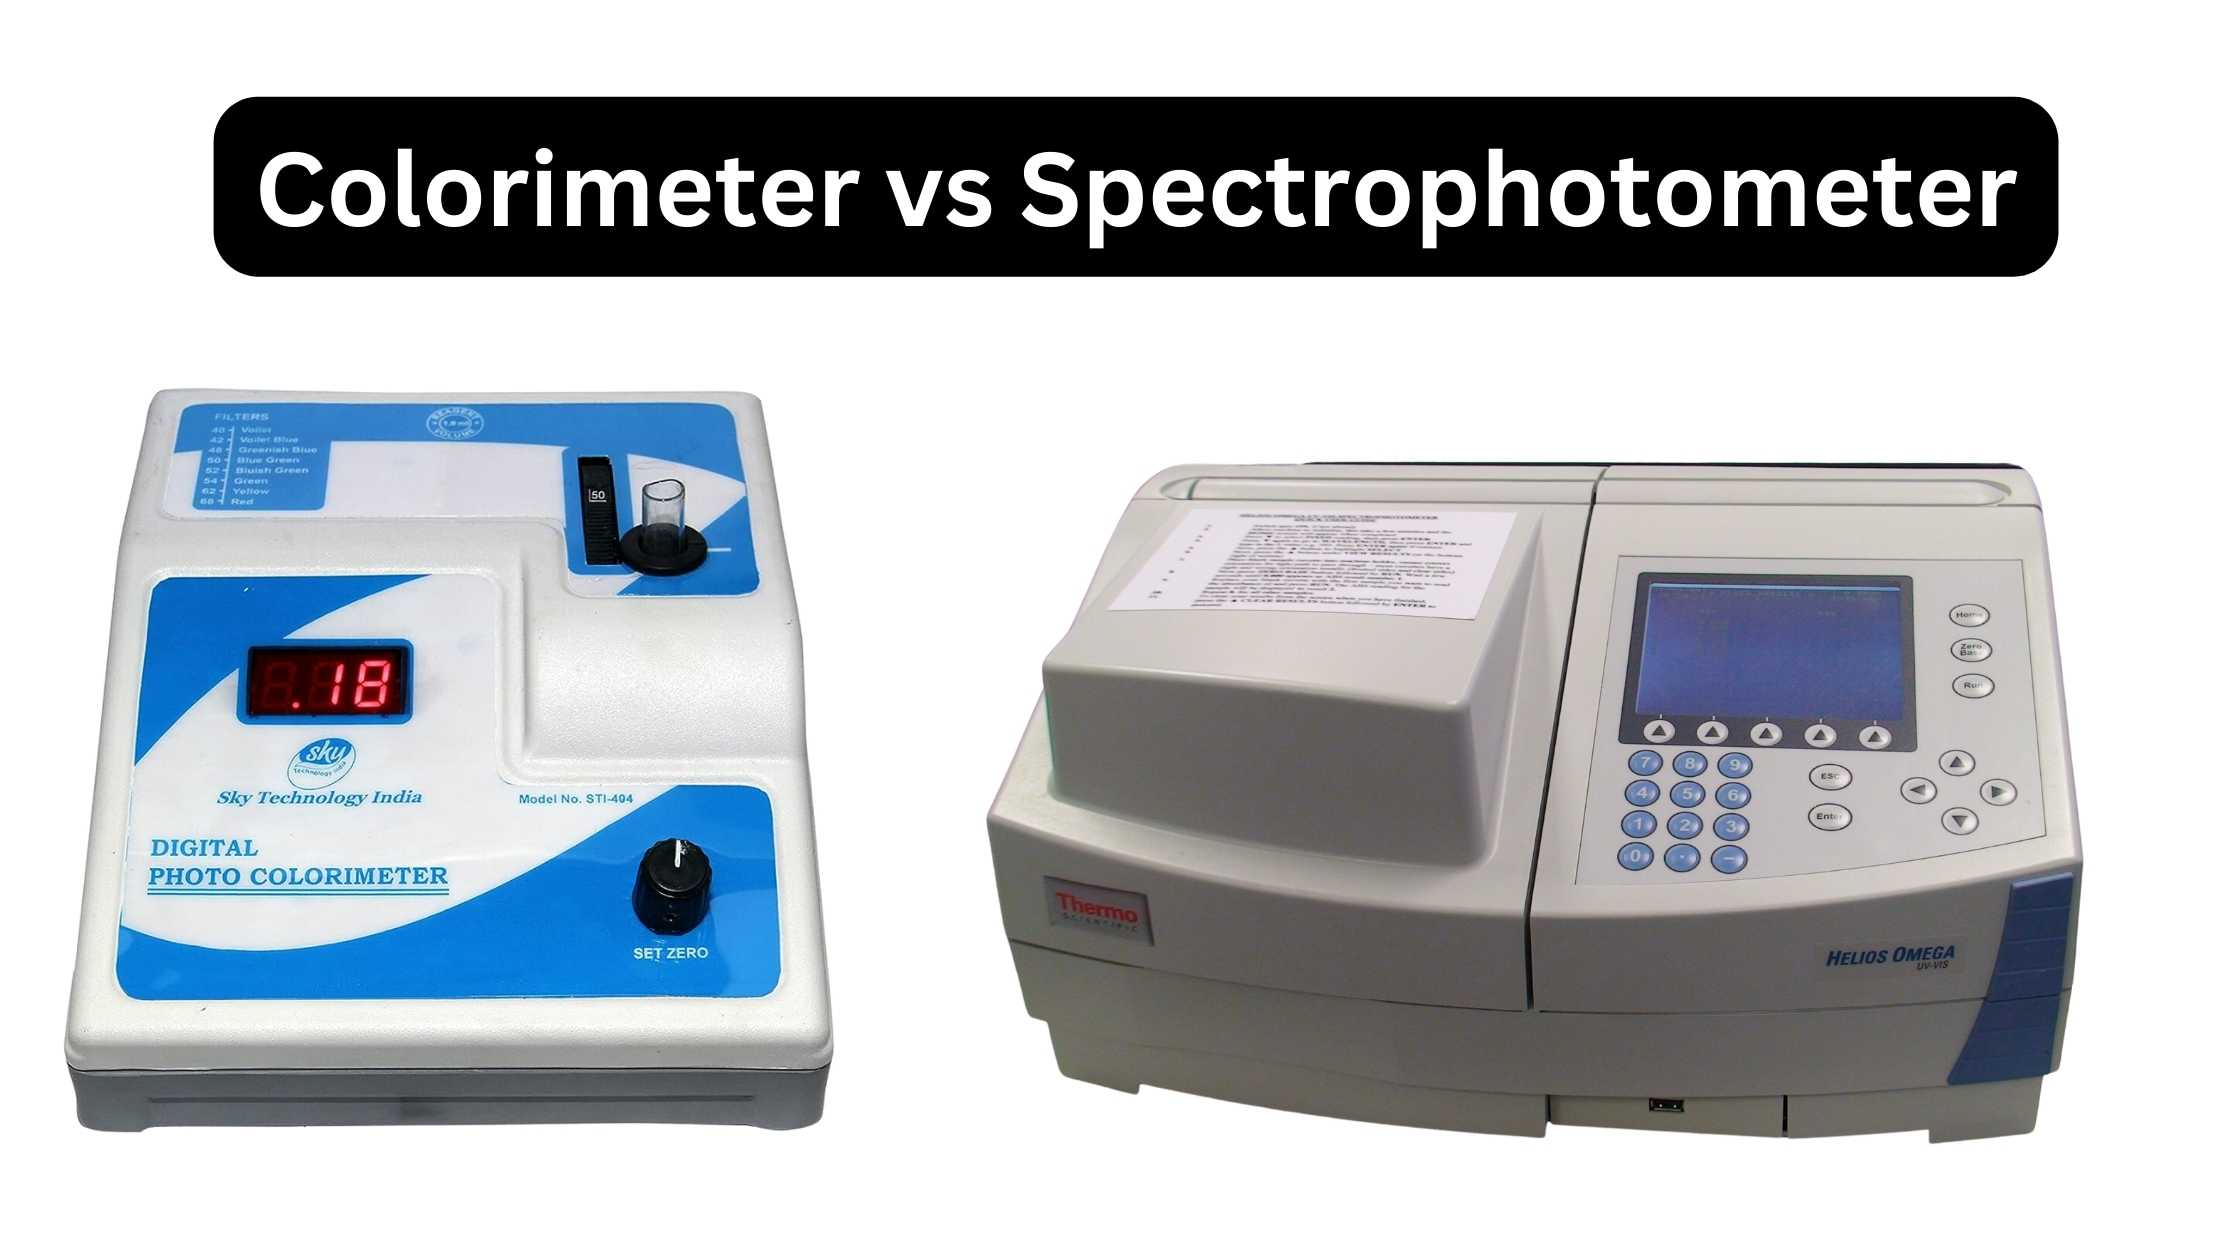 Colorimeter vs Spectrophotometer